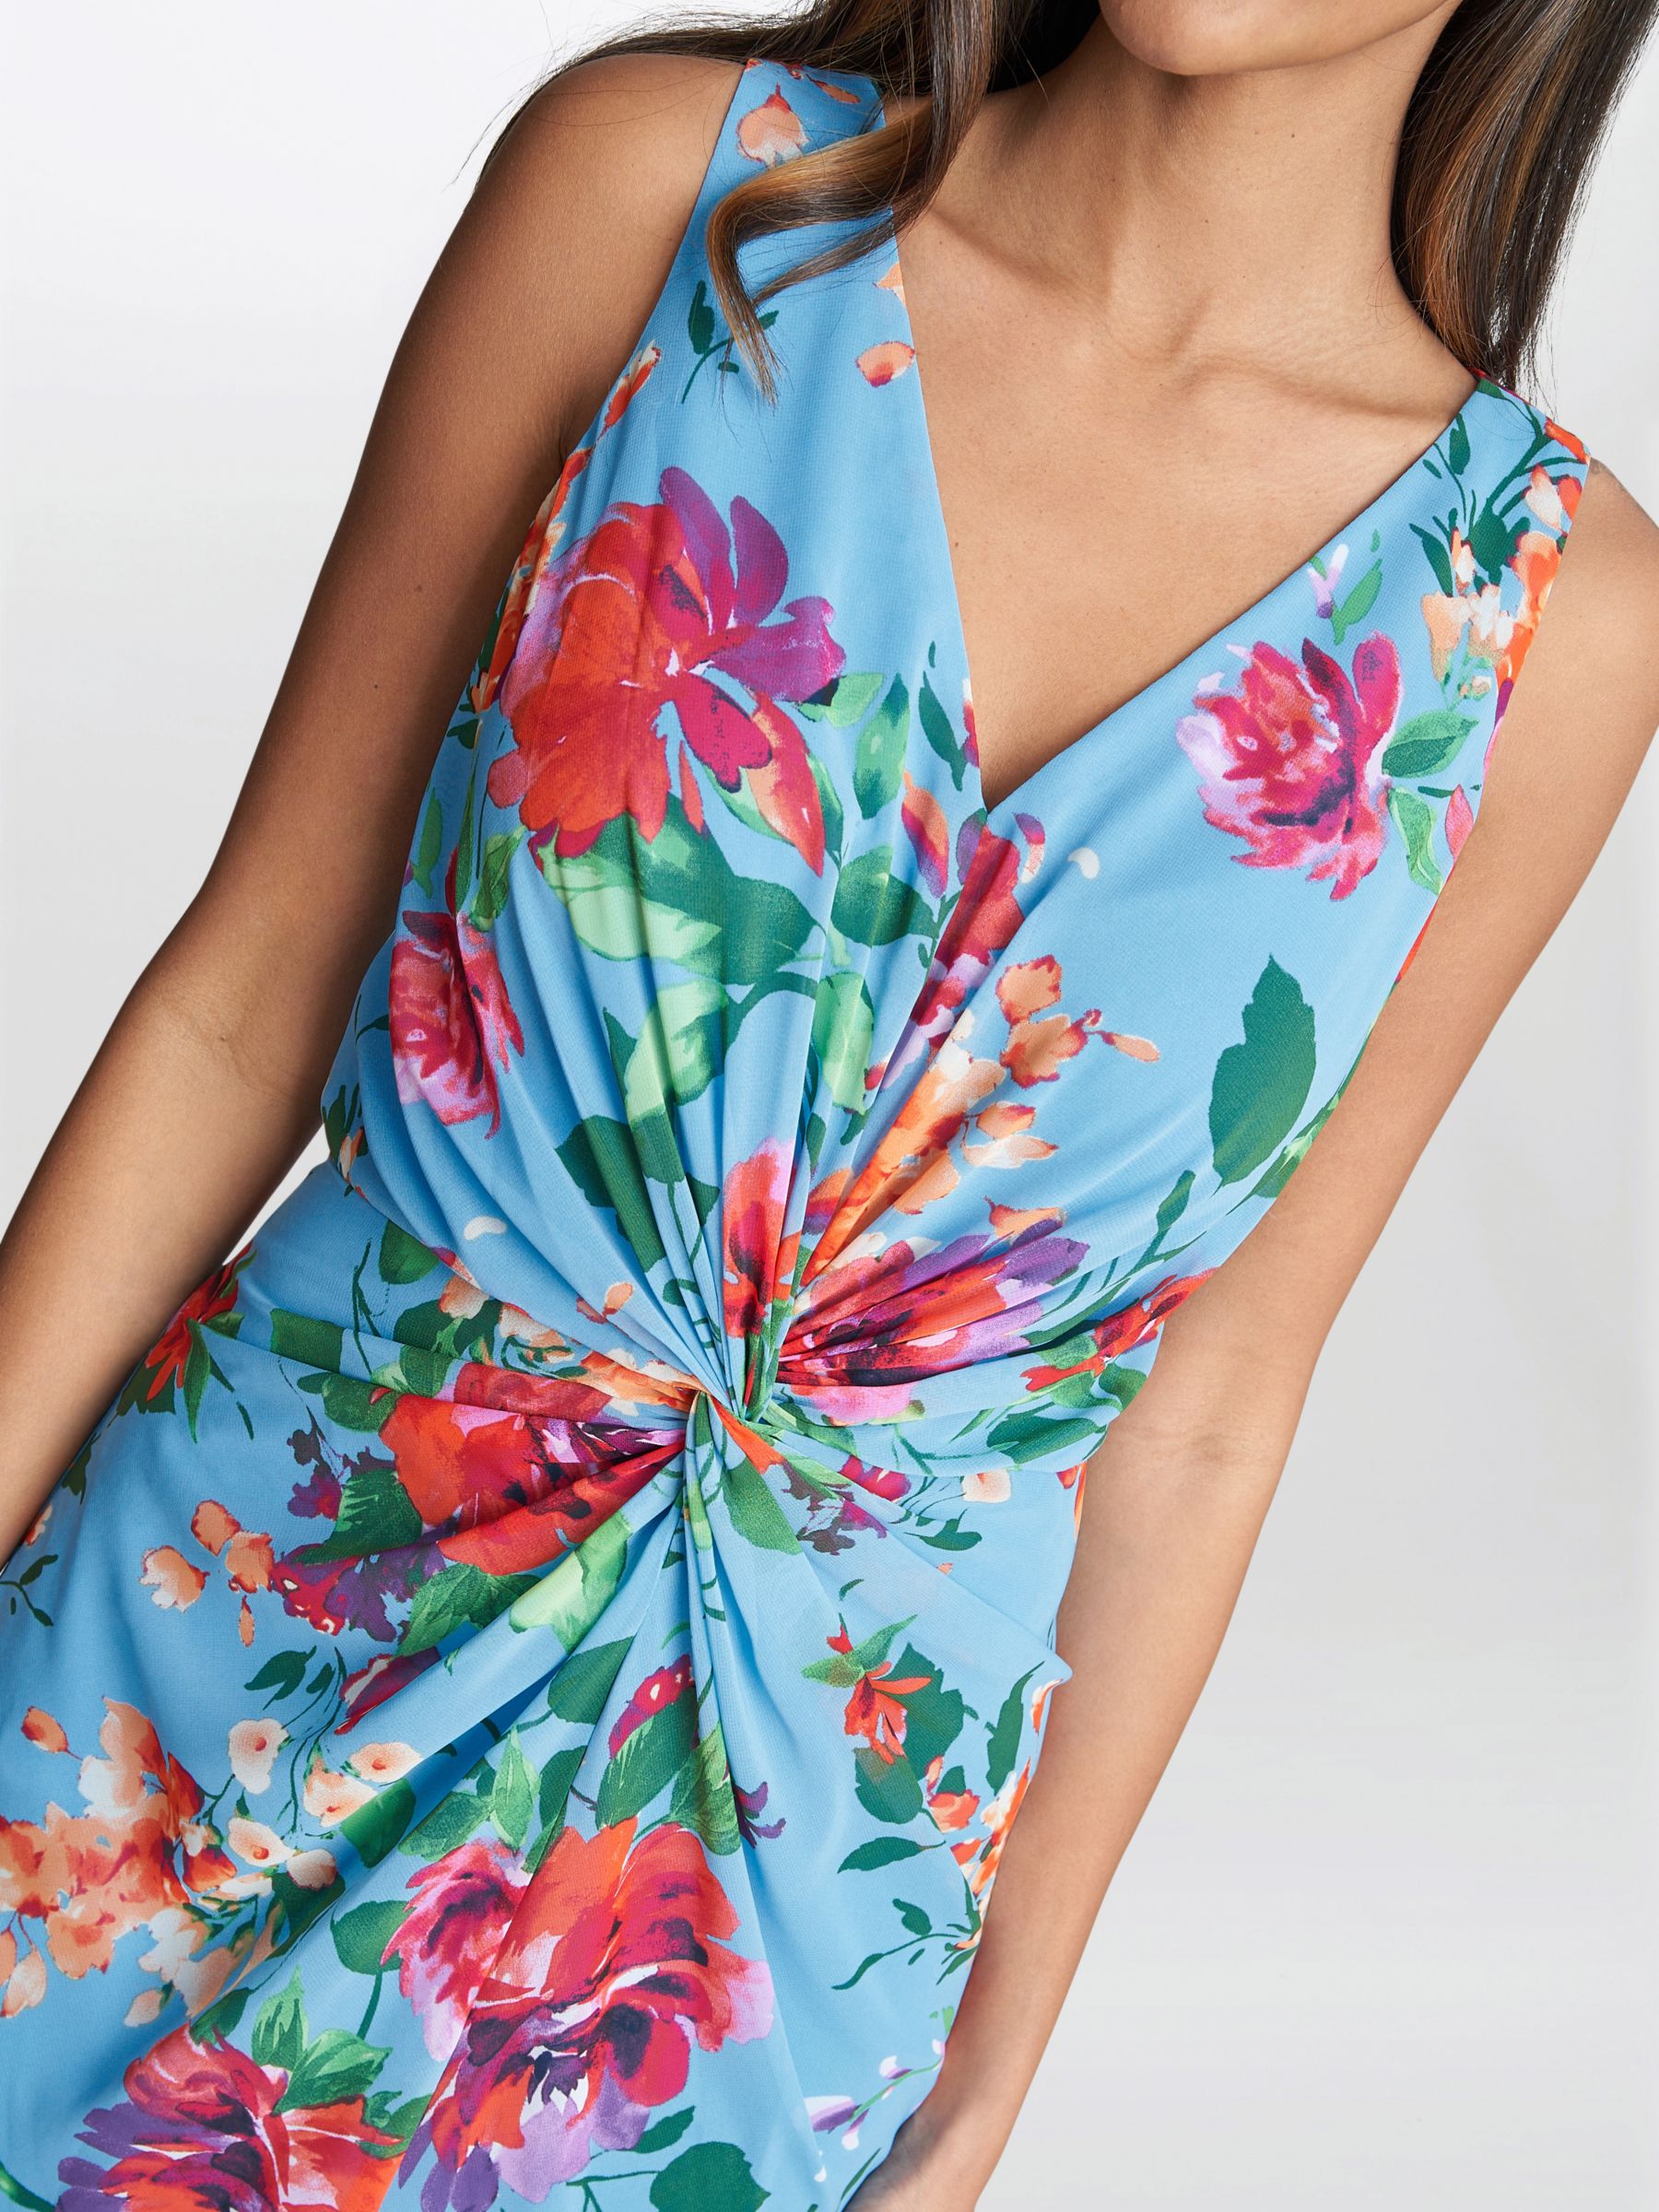 Gina Bacconi Jennifer Floral Twist Detail Maxi Dress, Aqua/Multi